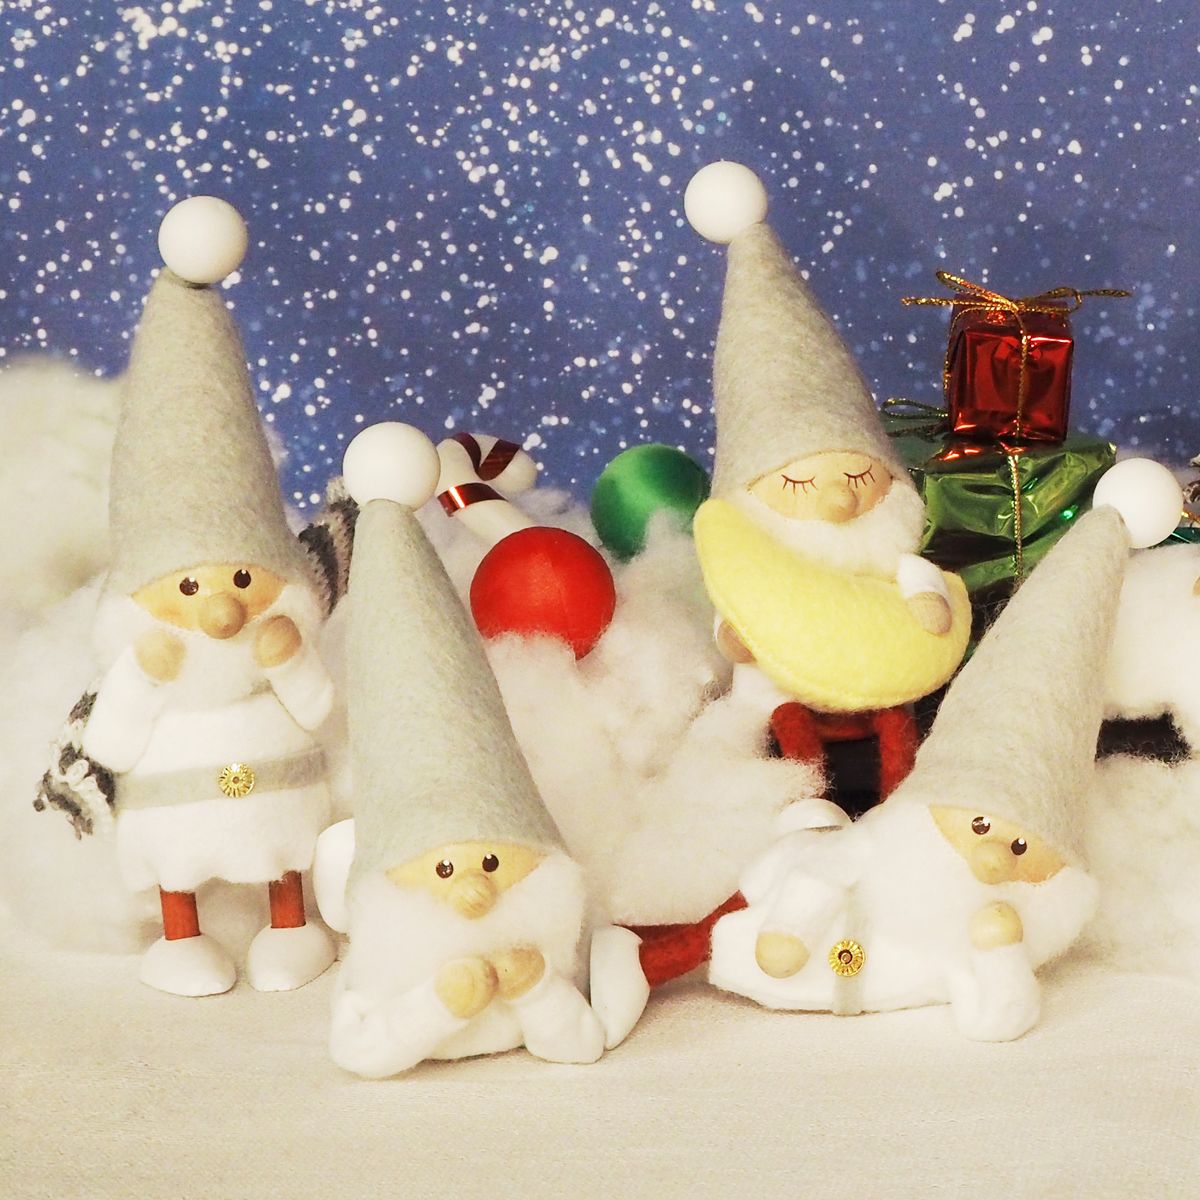 ノルディカ ニッセ クリスマス 木製人形 寝転がるサンタ サイレントナイト